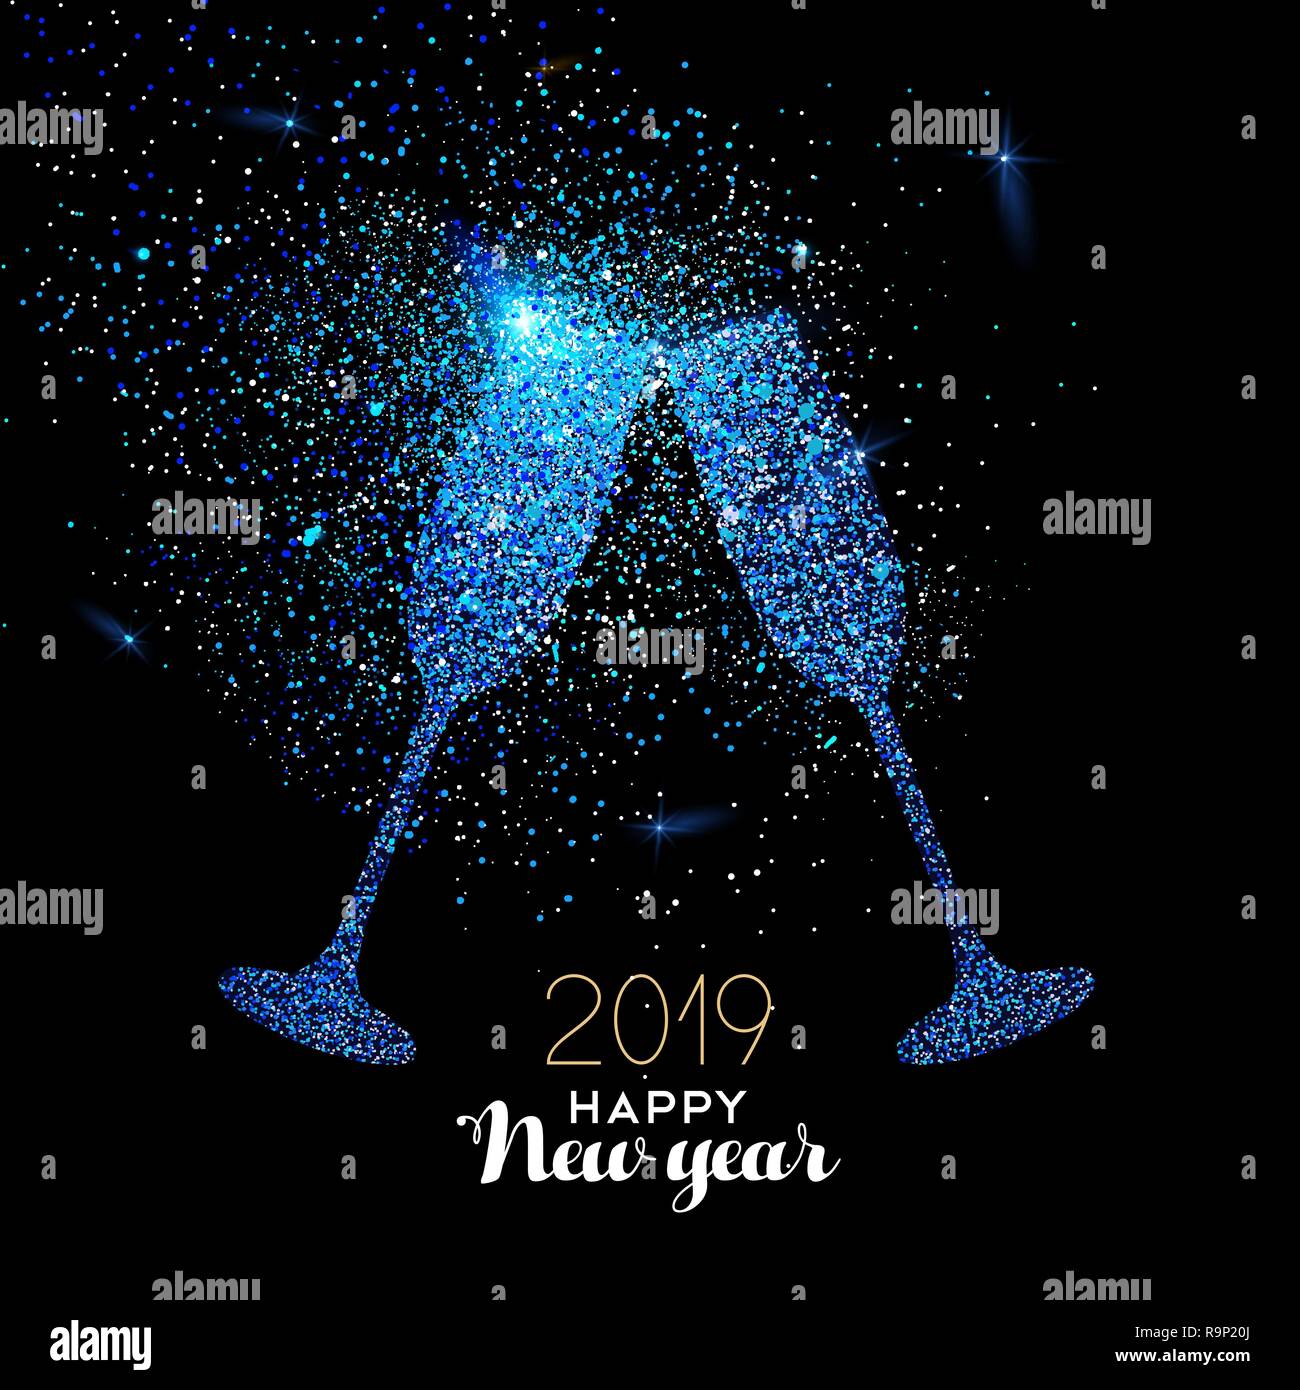 Neues Jahr luxus Grußkarte Abbildung, party Glas Toast blau glitter Textur auf schwarz 24.00 Uhr Hintergrund mit Urlaub Text zitieren. Stock Vektor